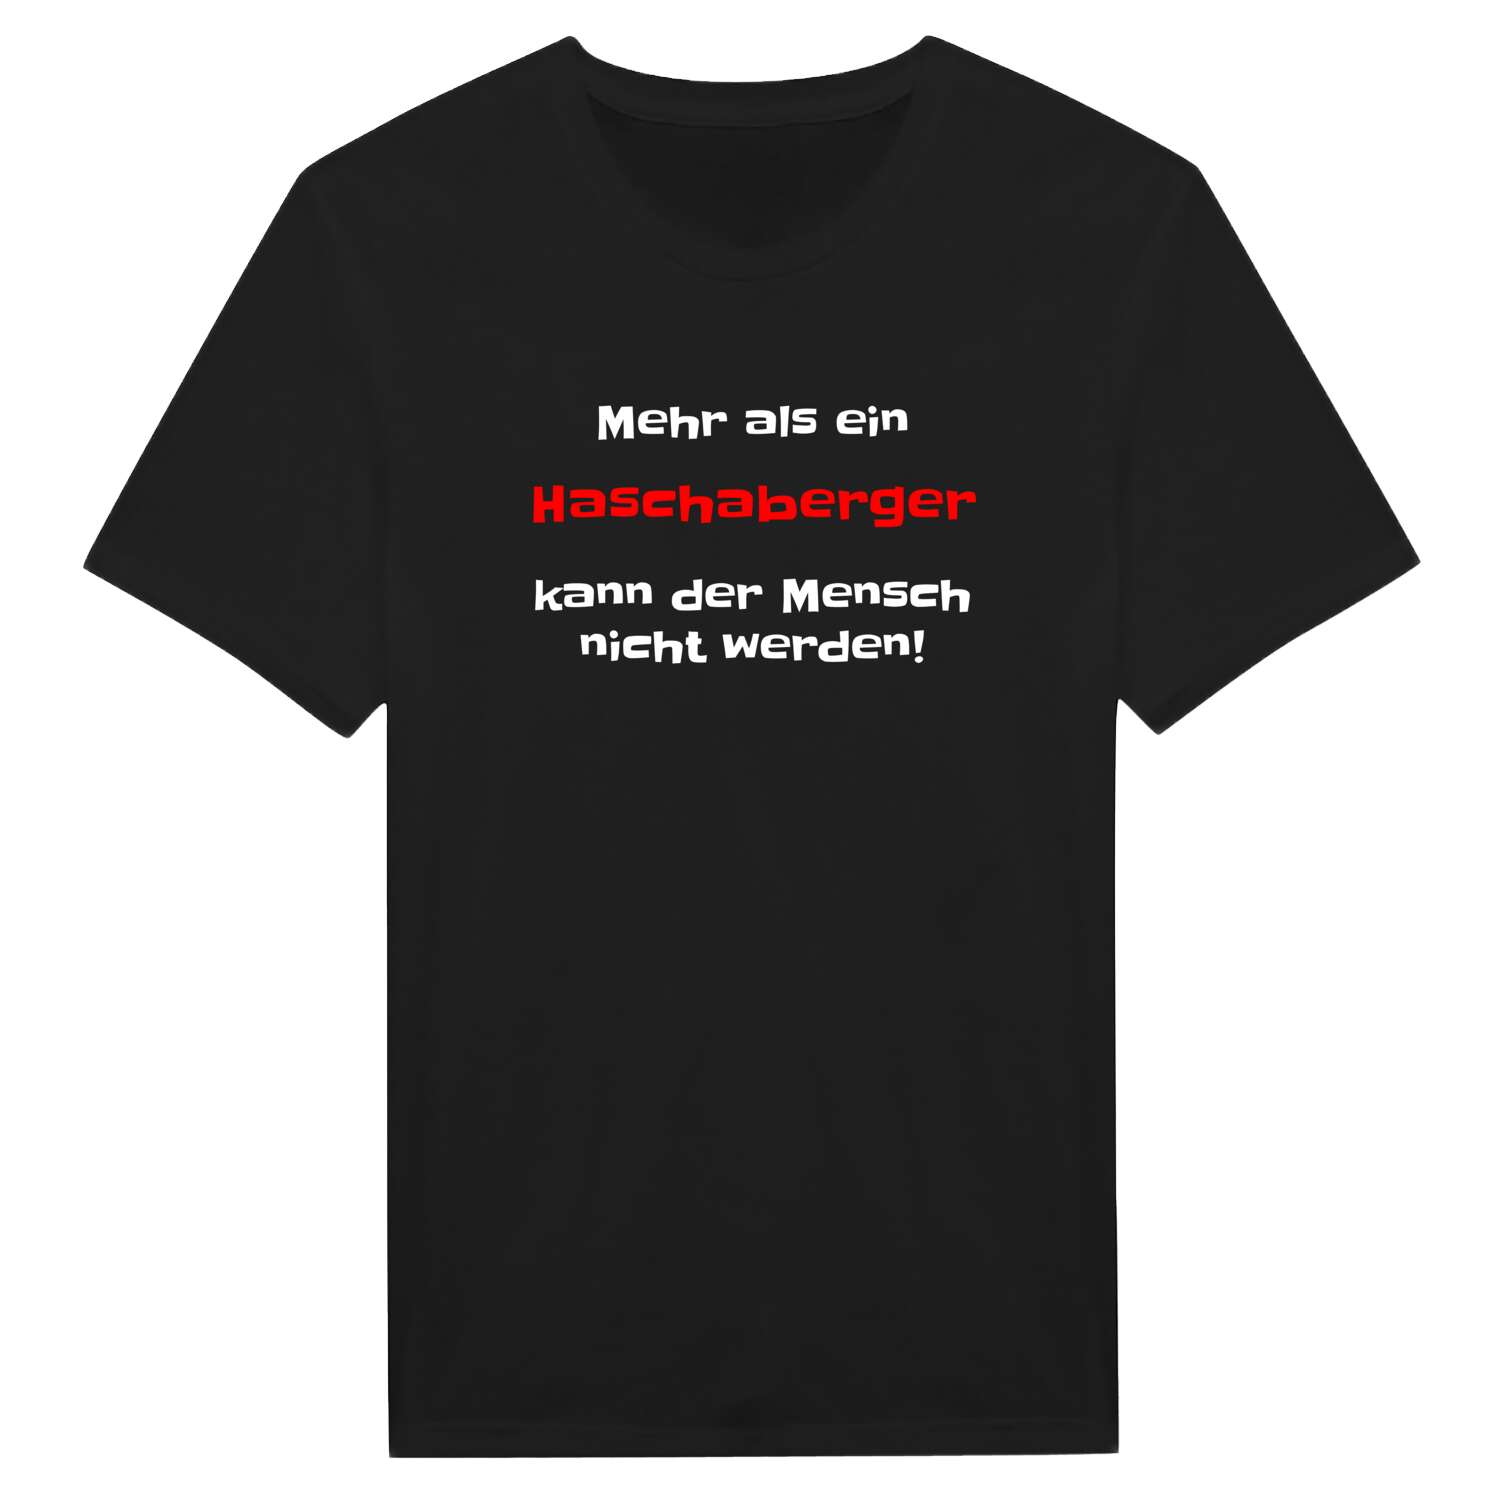 Haschaberg T-Shirt »Mehr als ein«